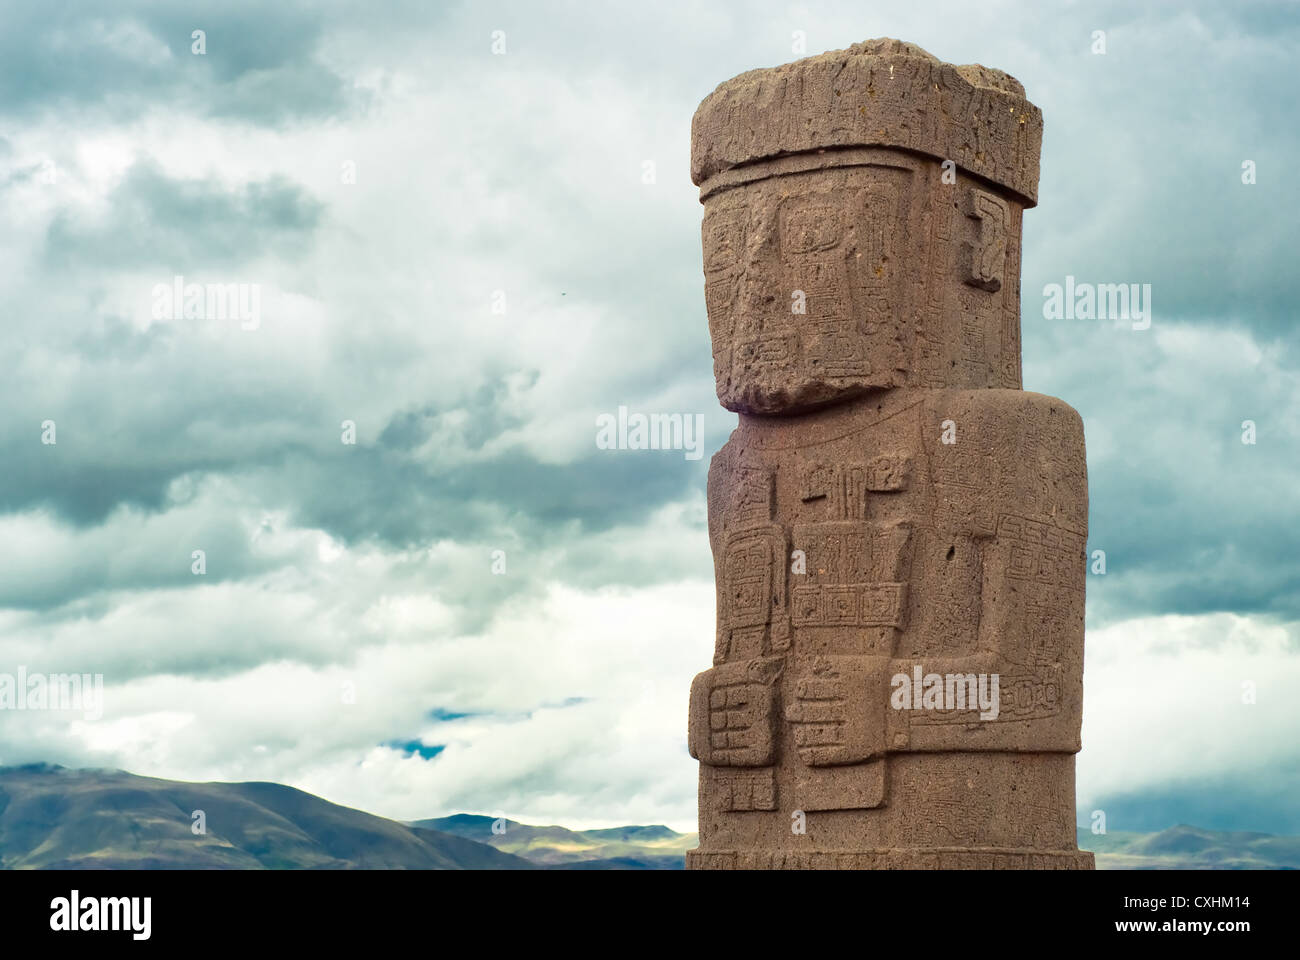 Monolith at Ruins of Tiwanaku, Bolivia Stock Photo